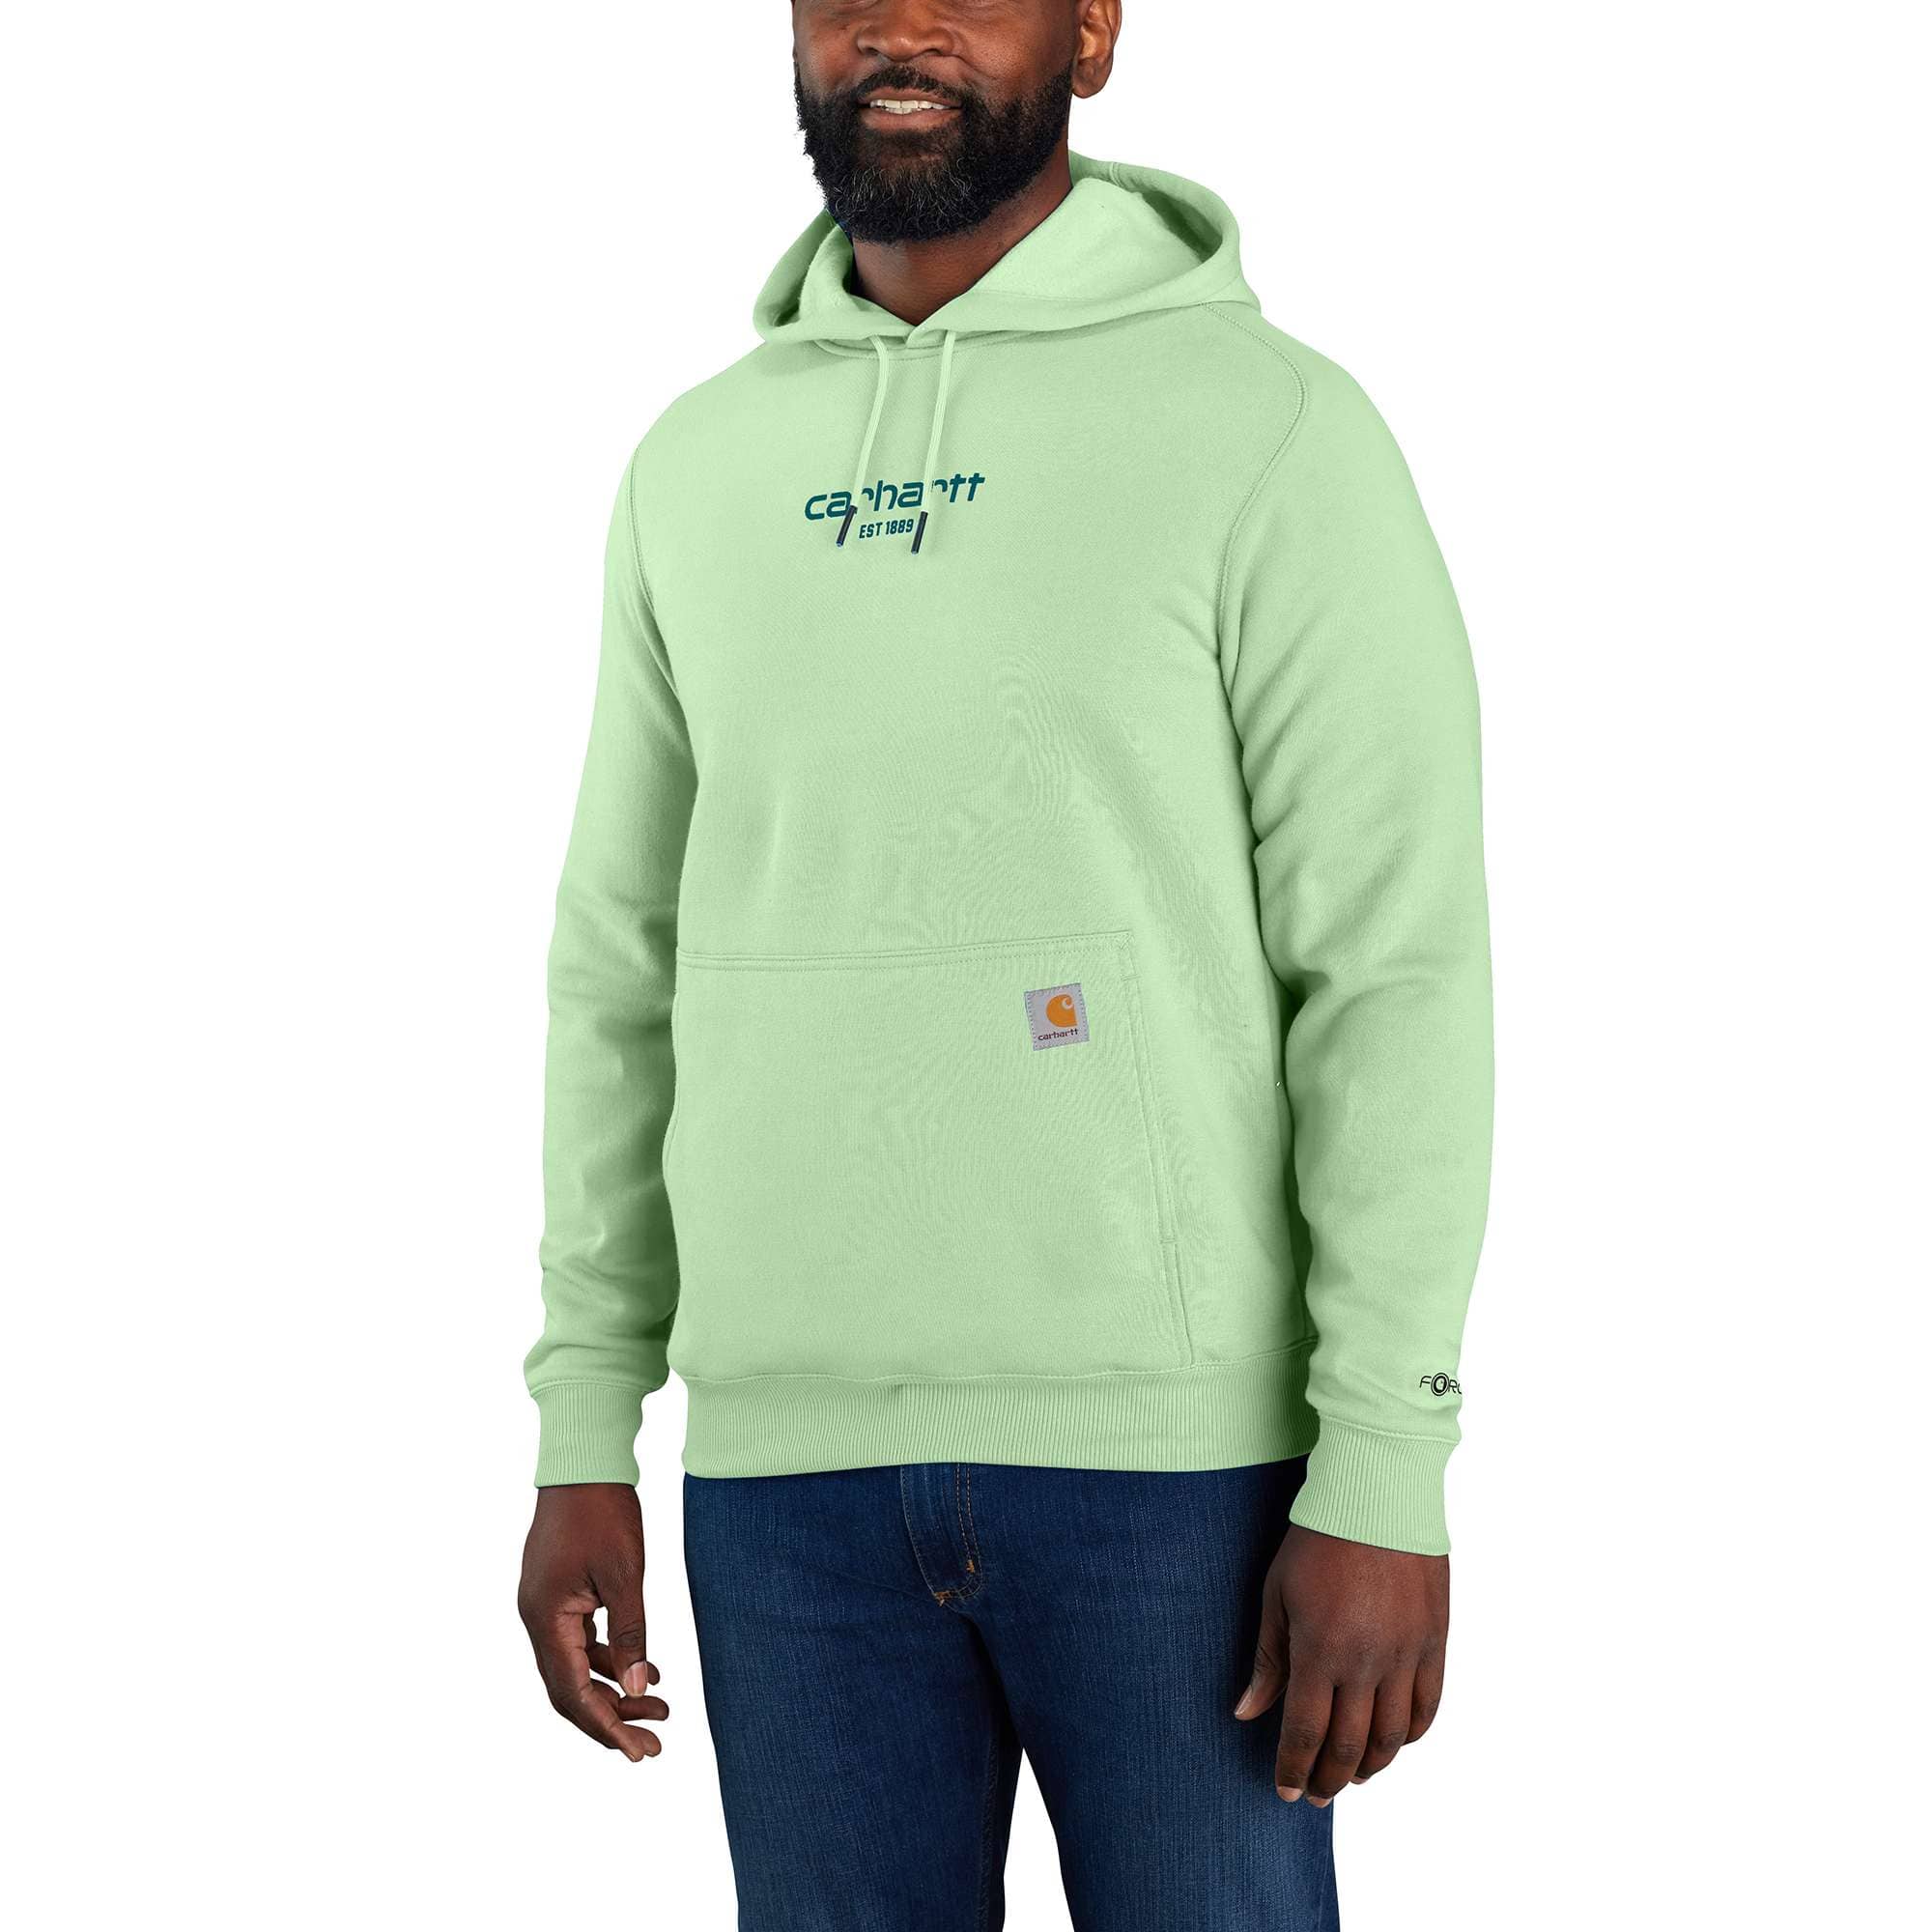 Men's Sweatshirts Sale